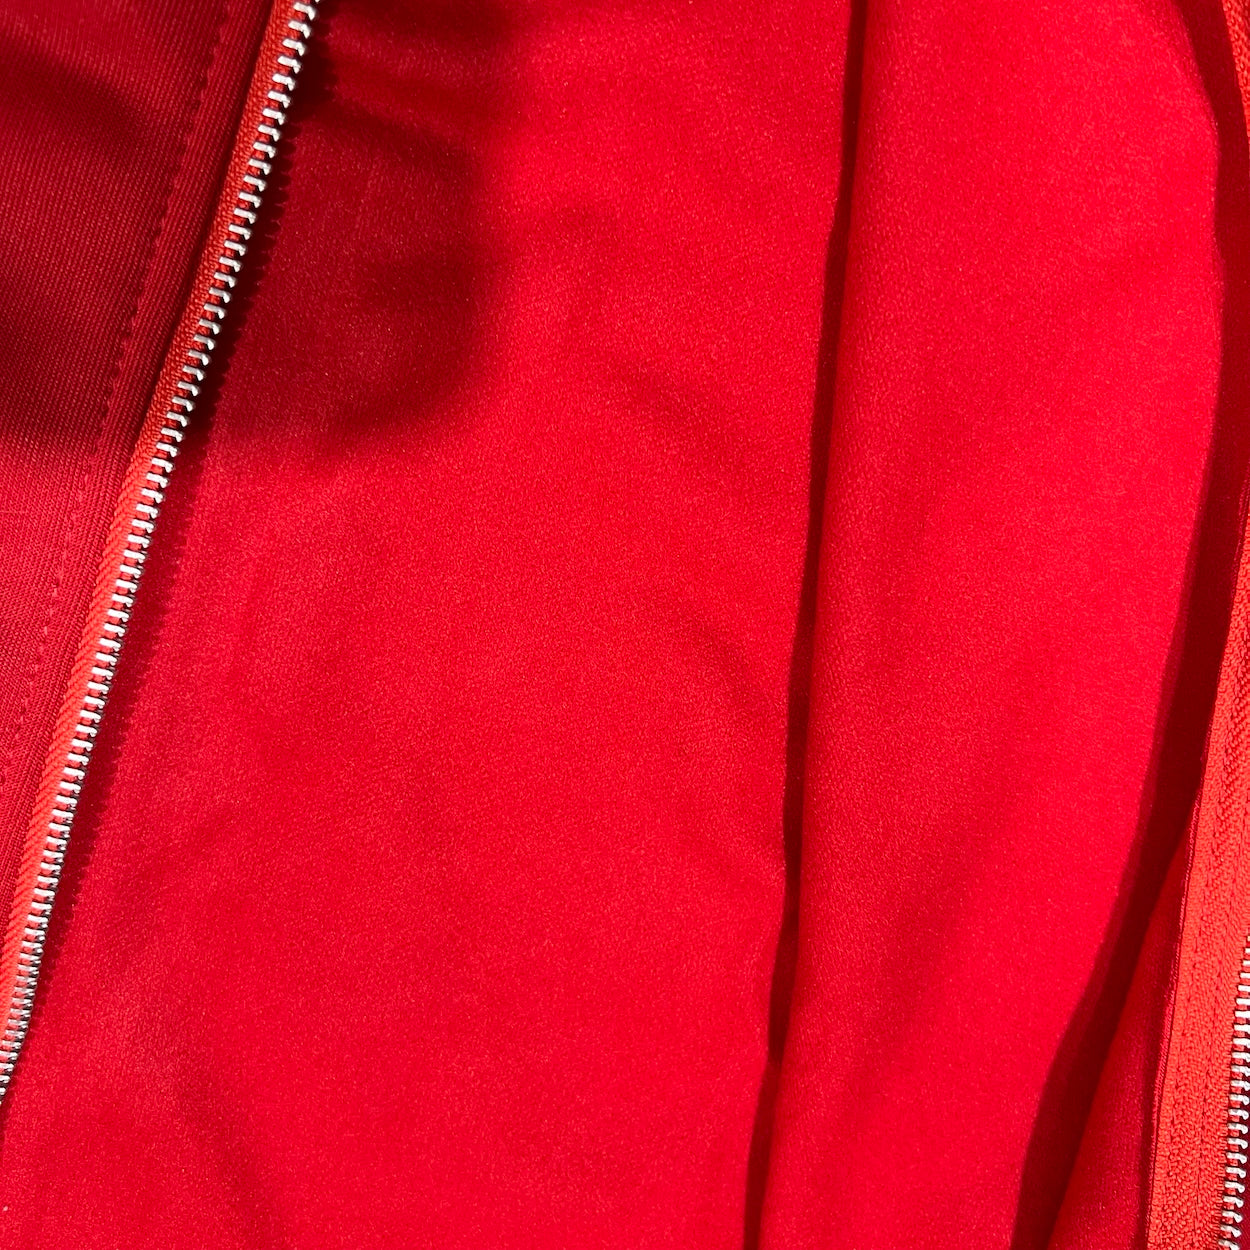 S.R.T Collaboration Zip Sweatshirt In Race Red